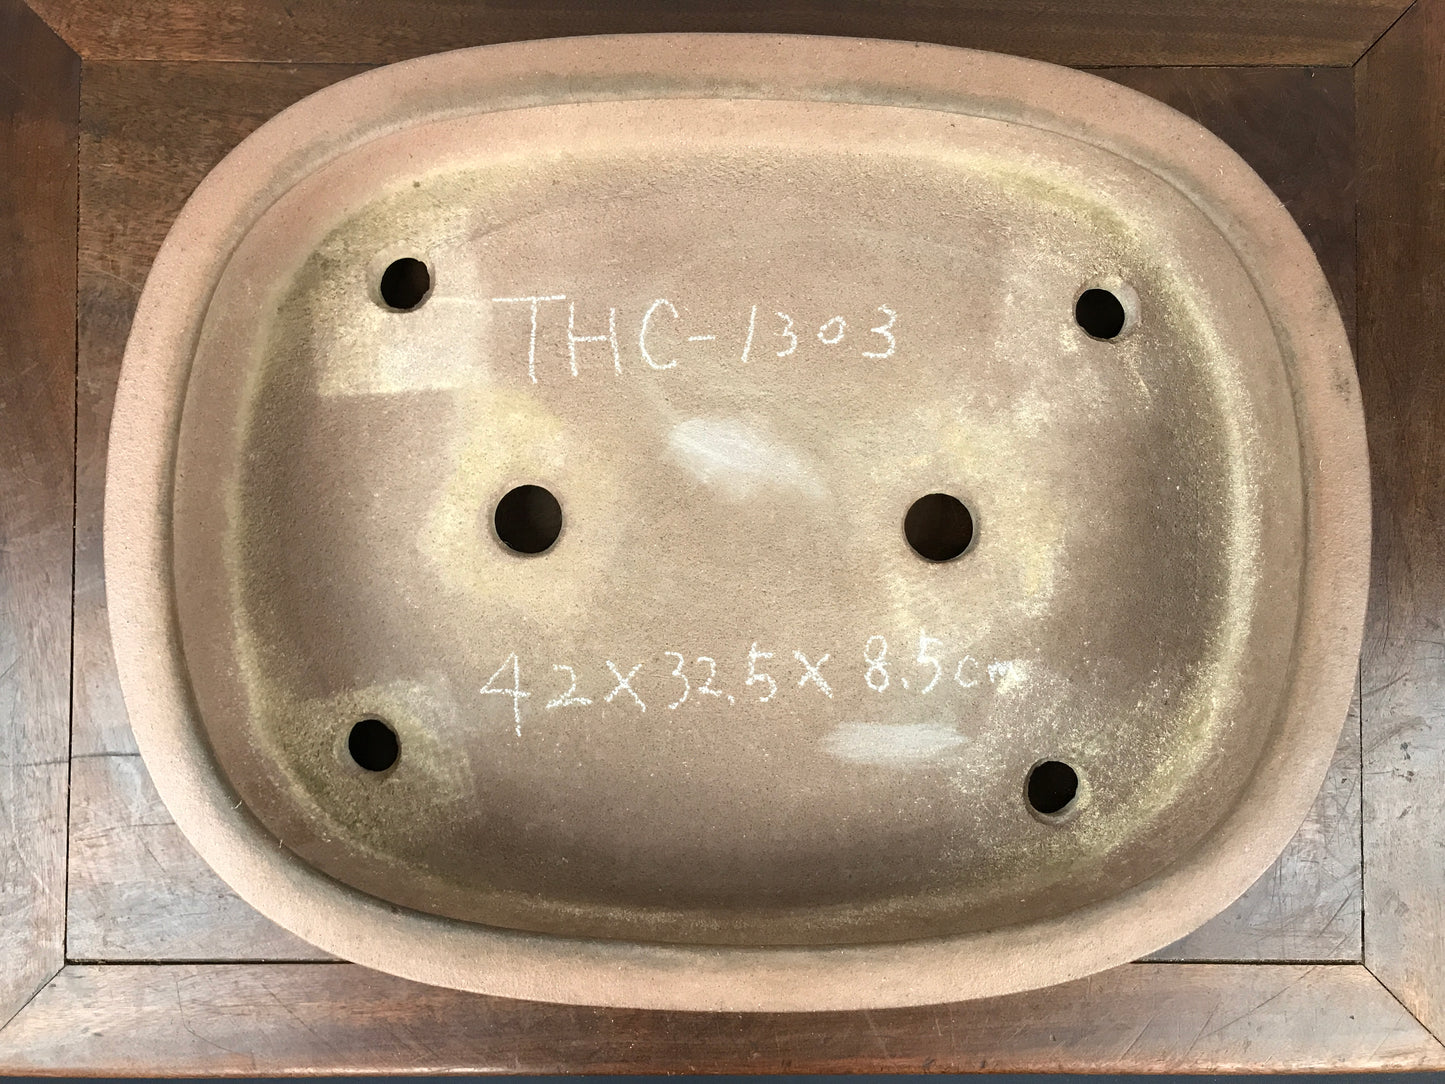 Kisen ovale #THC-1303